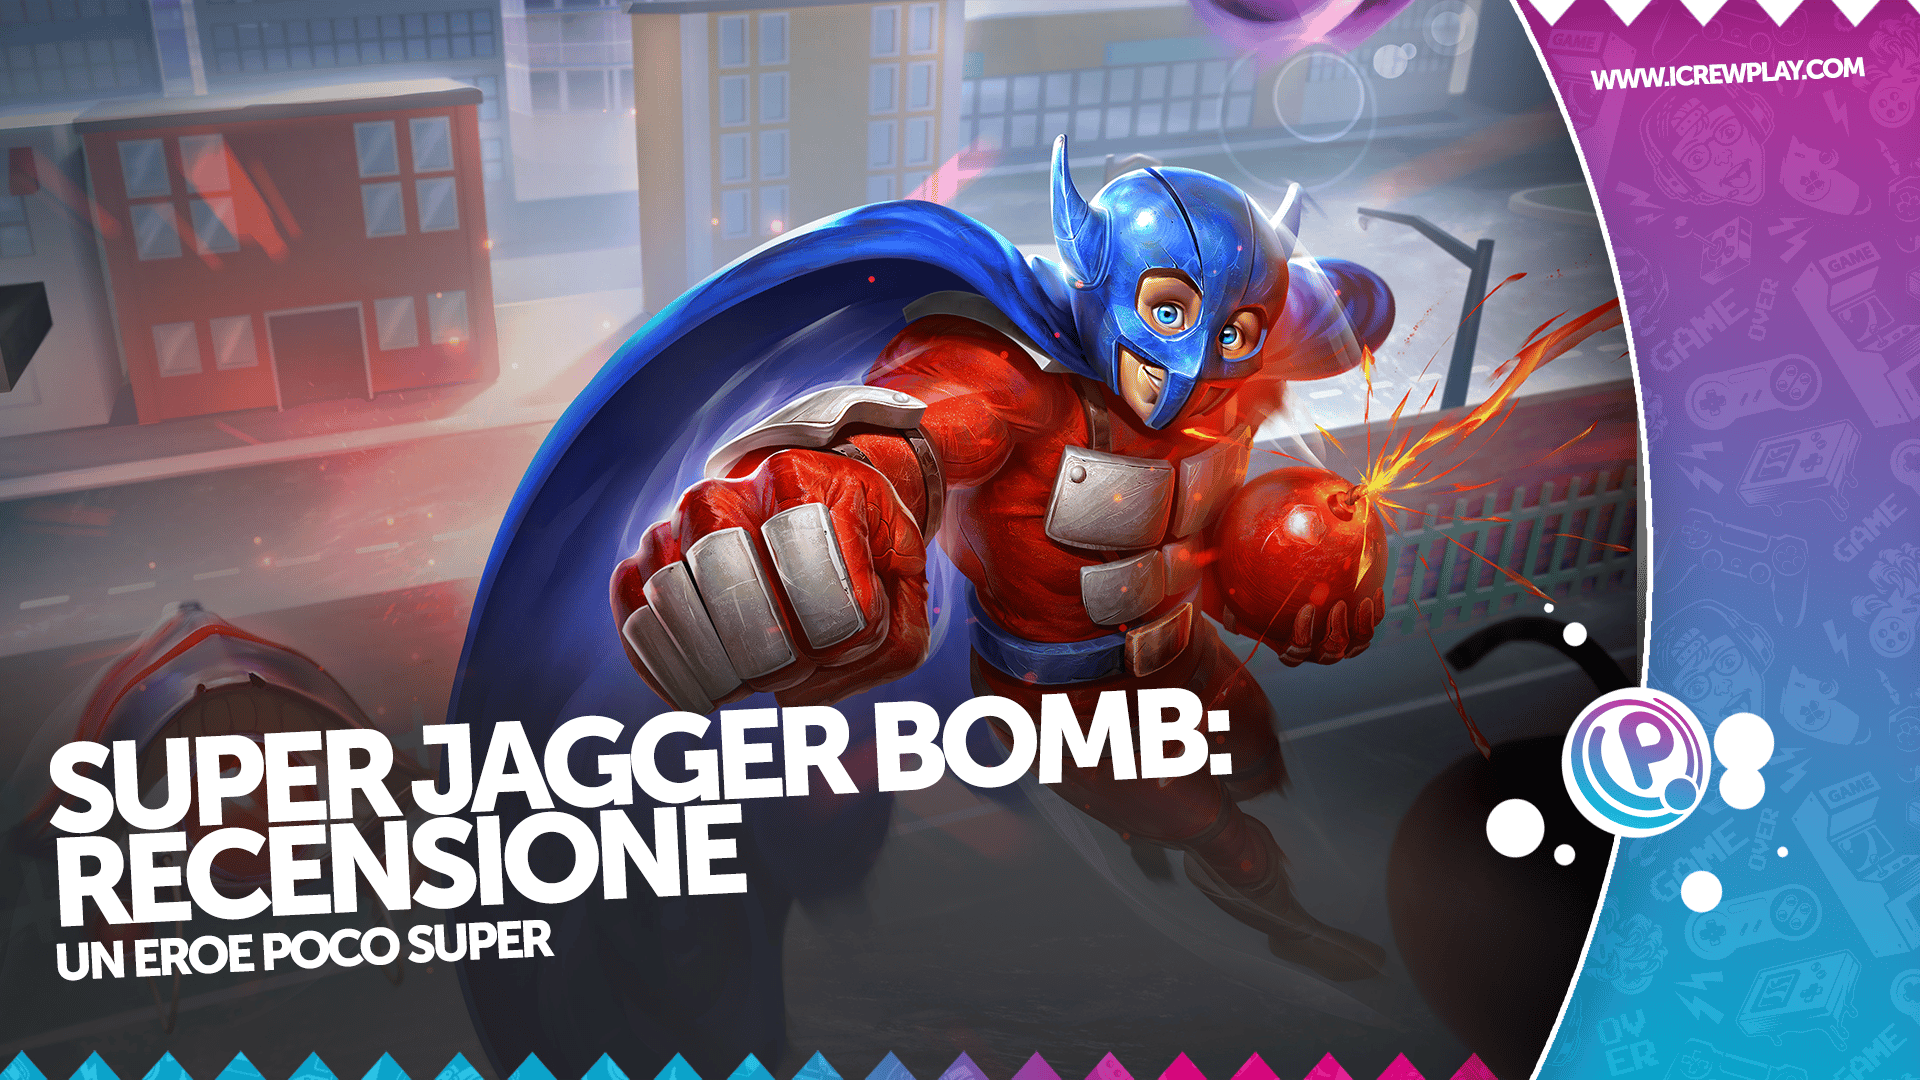 Super Jagger Bomb: Recensione Nintendo Switch 22